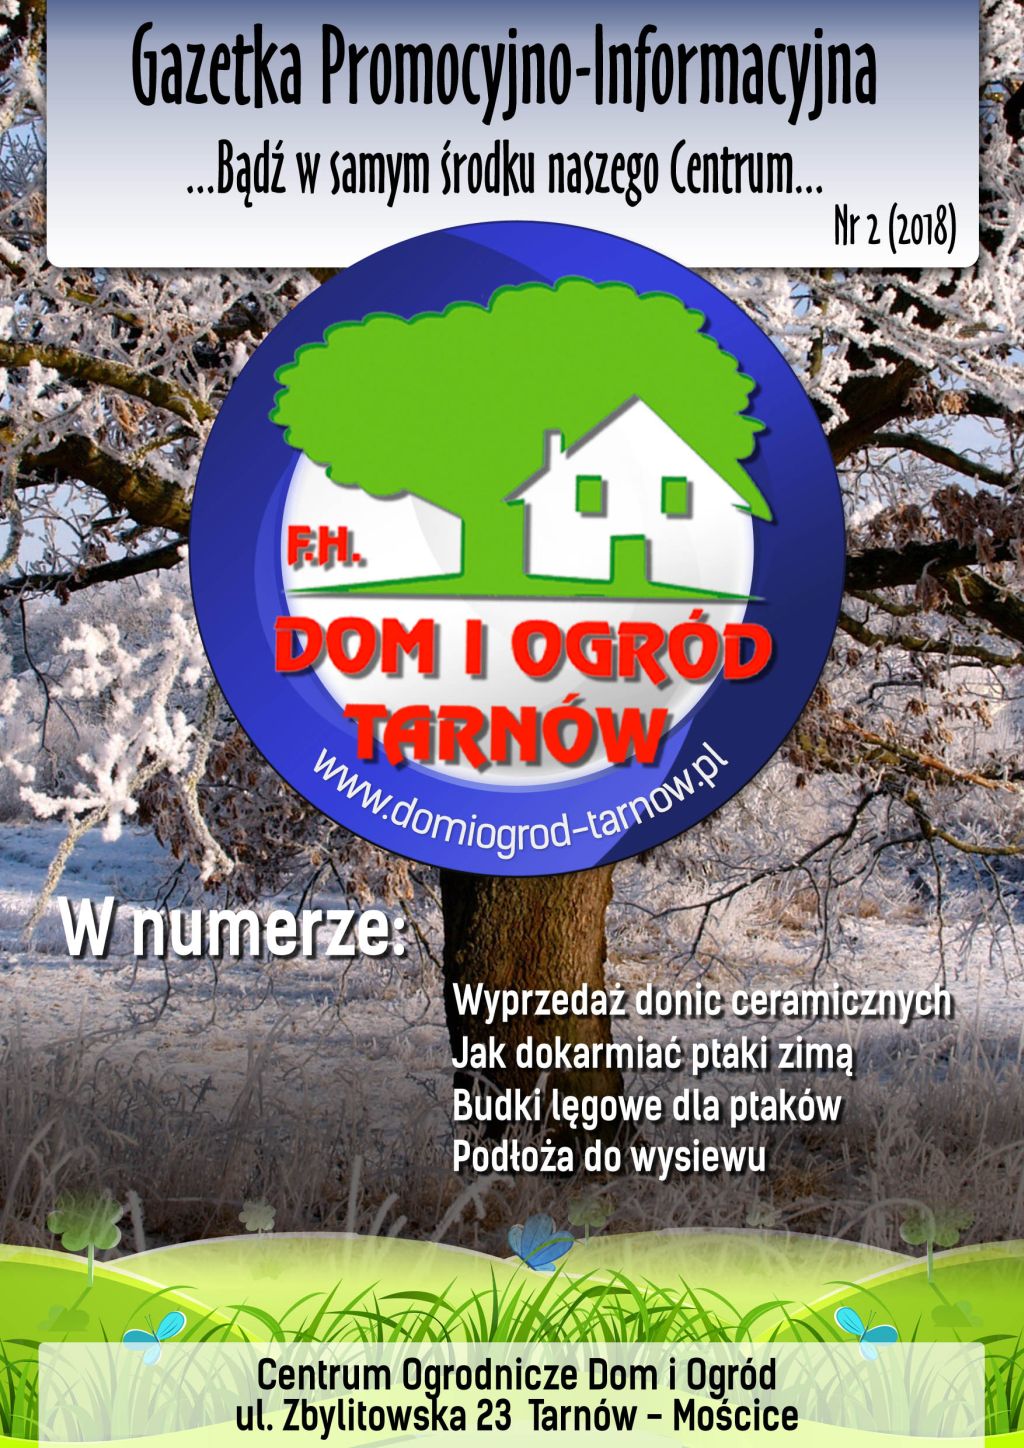 Gazetka Promocyjno-Informacyjna - 2/2018